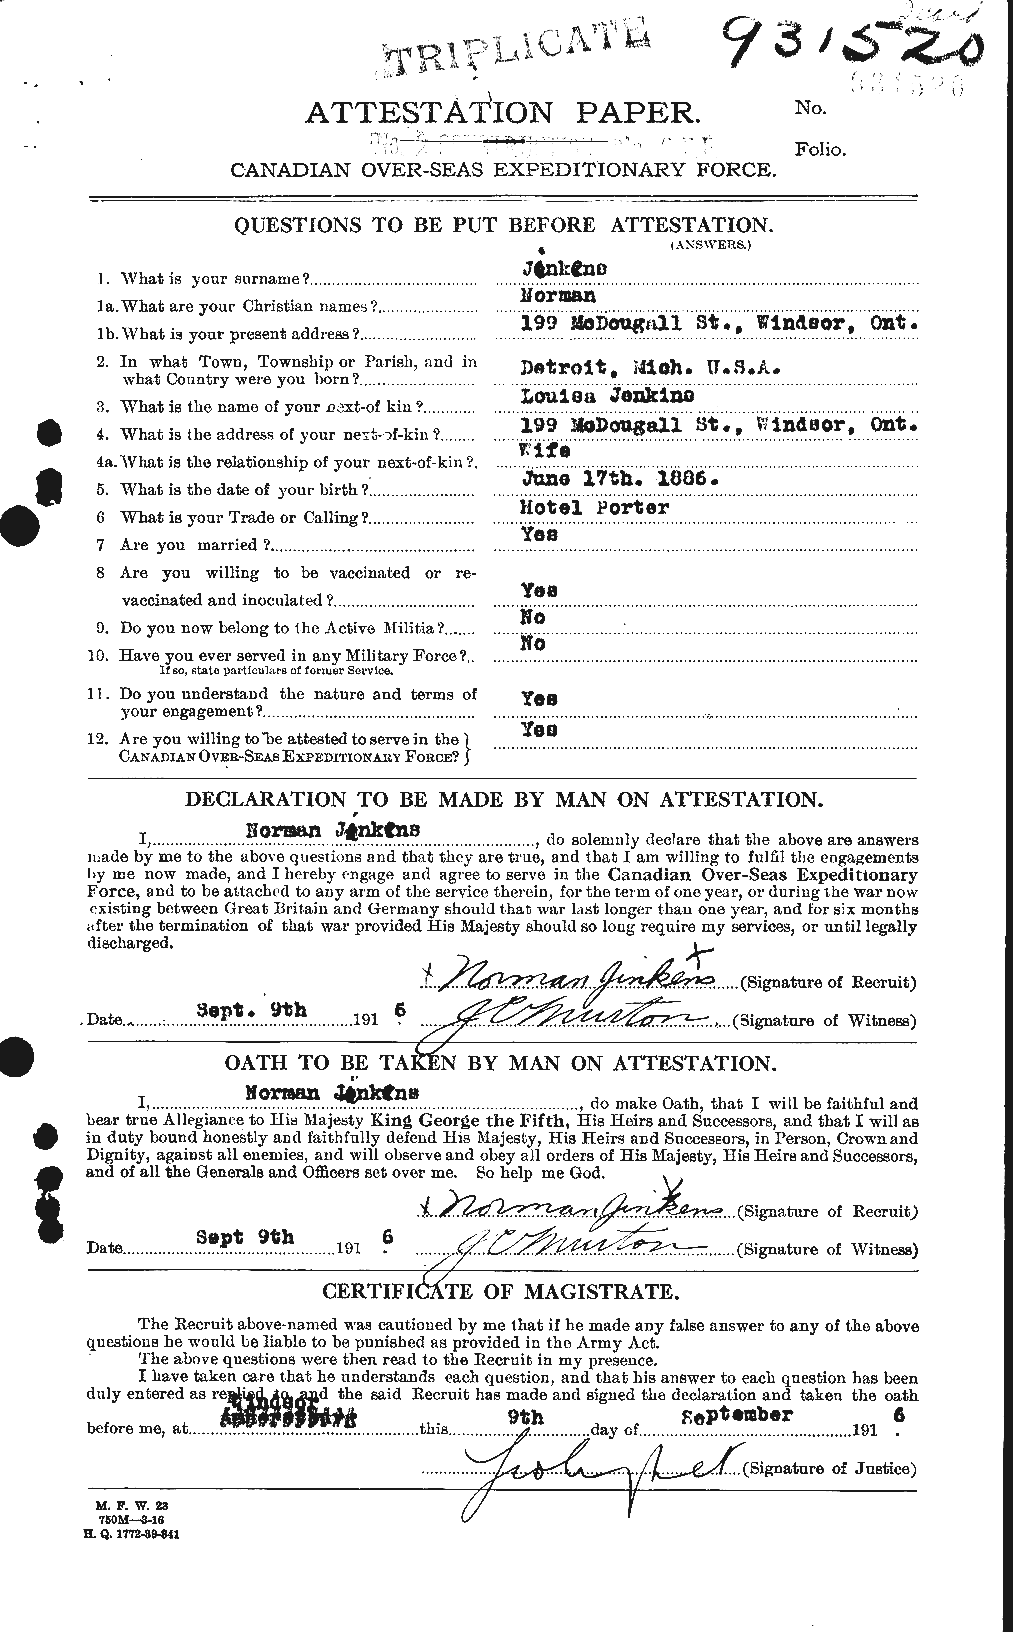 Dossiers du Personnel de la Première Guerre mondiale - CEC 691456a